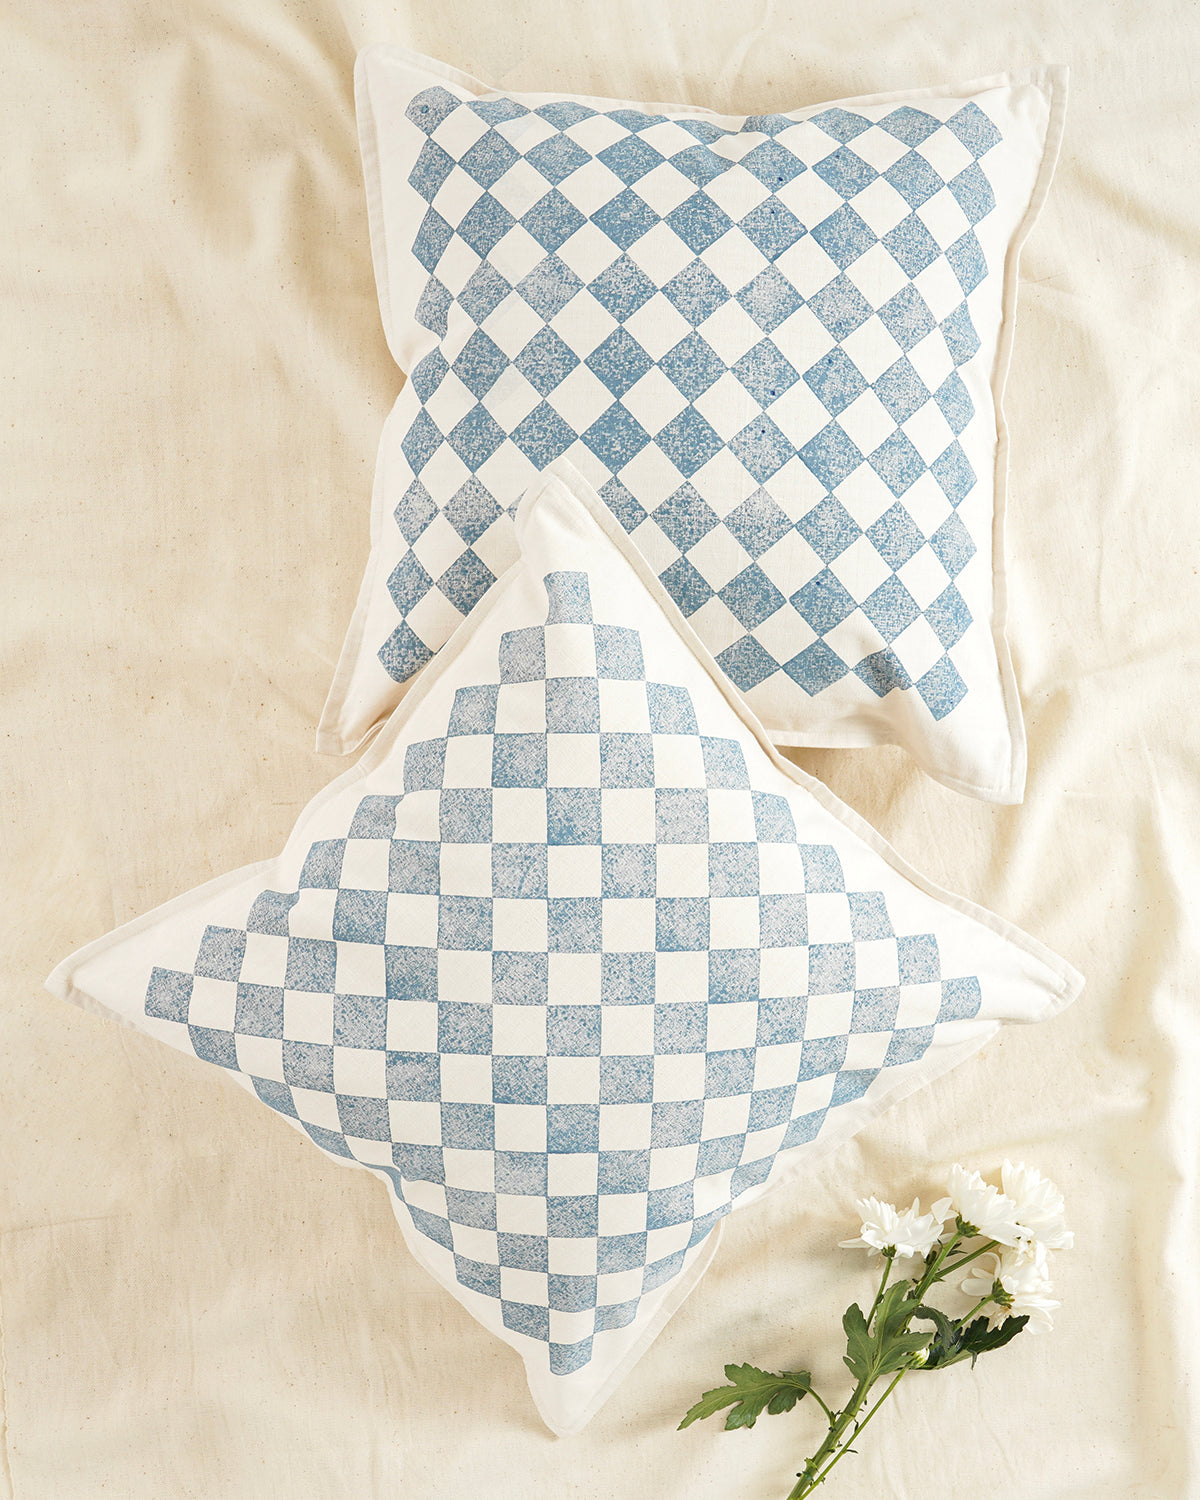 Chessboard Cushion Cover, Ocean Blue (18” X 18”)